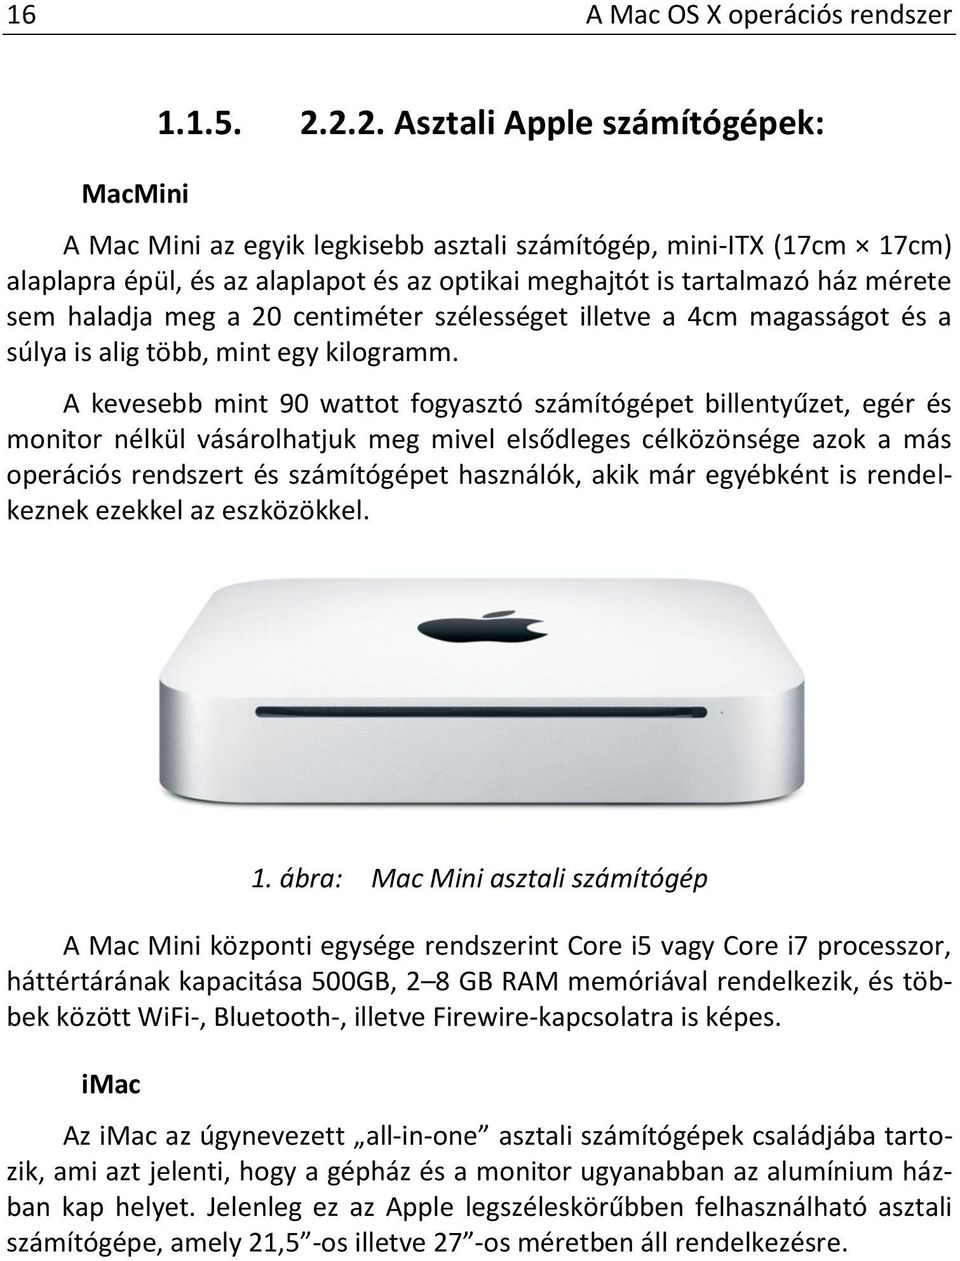 A Mac OS X operációs rendszer. Komló Csaba - PDF Ingyenes letöltés